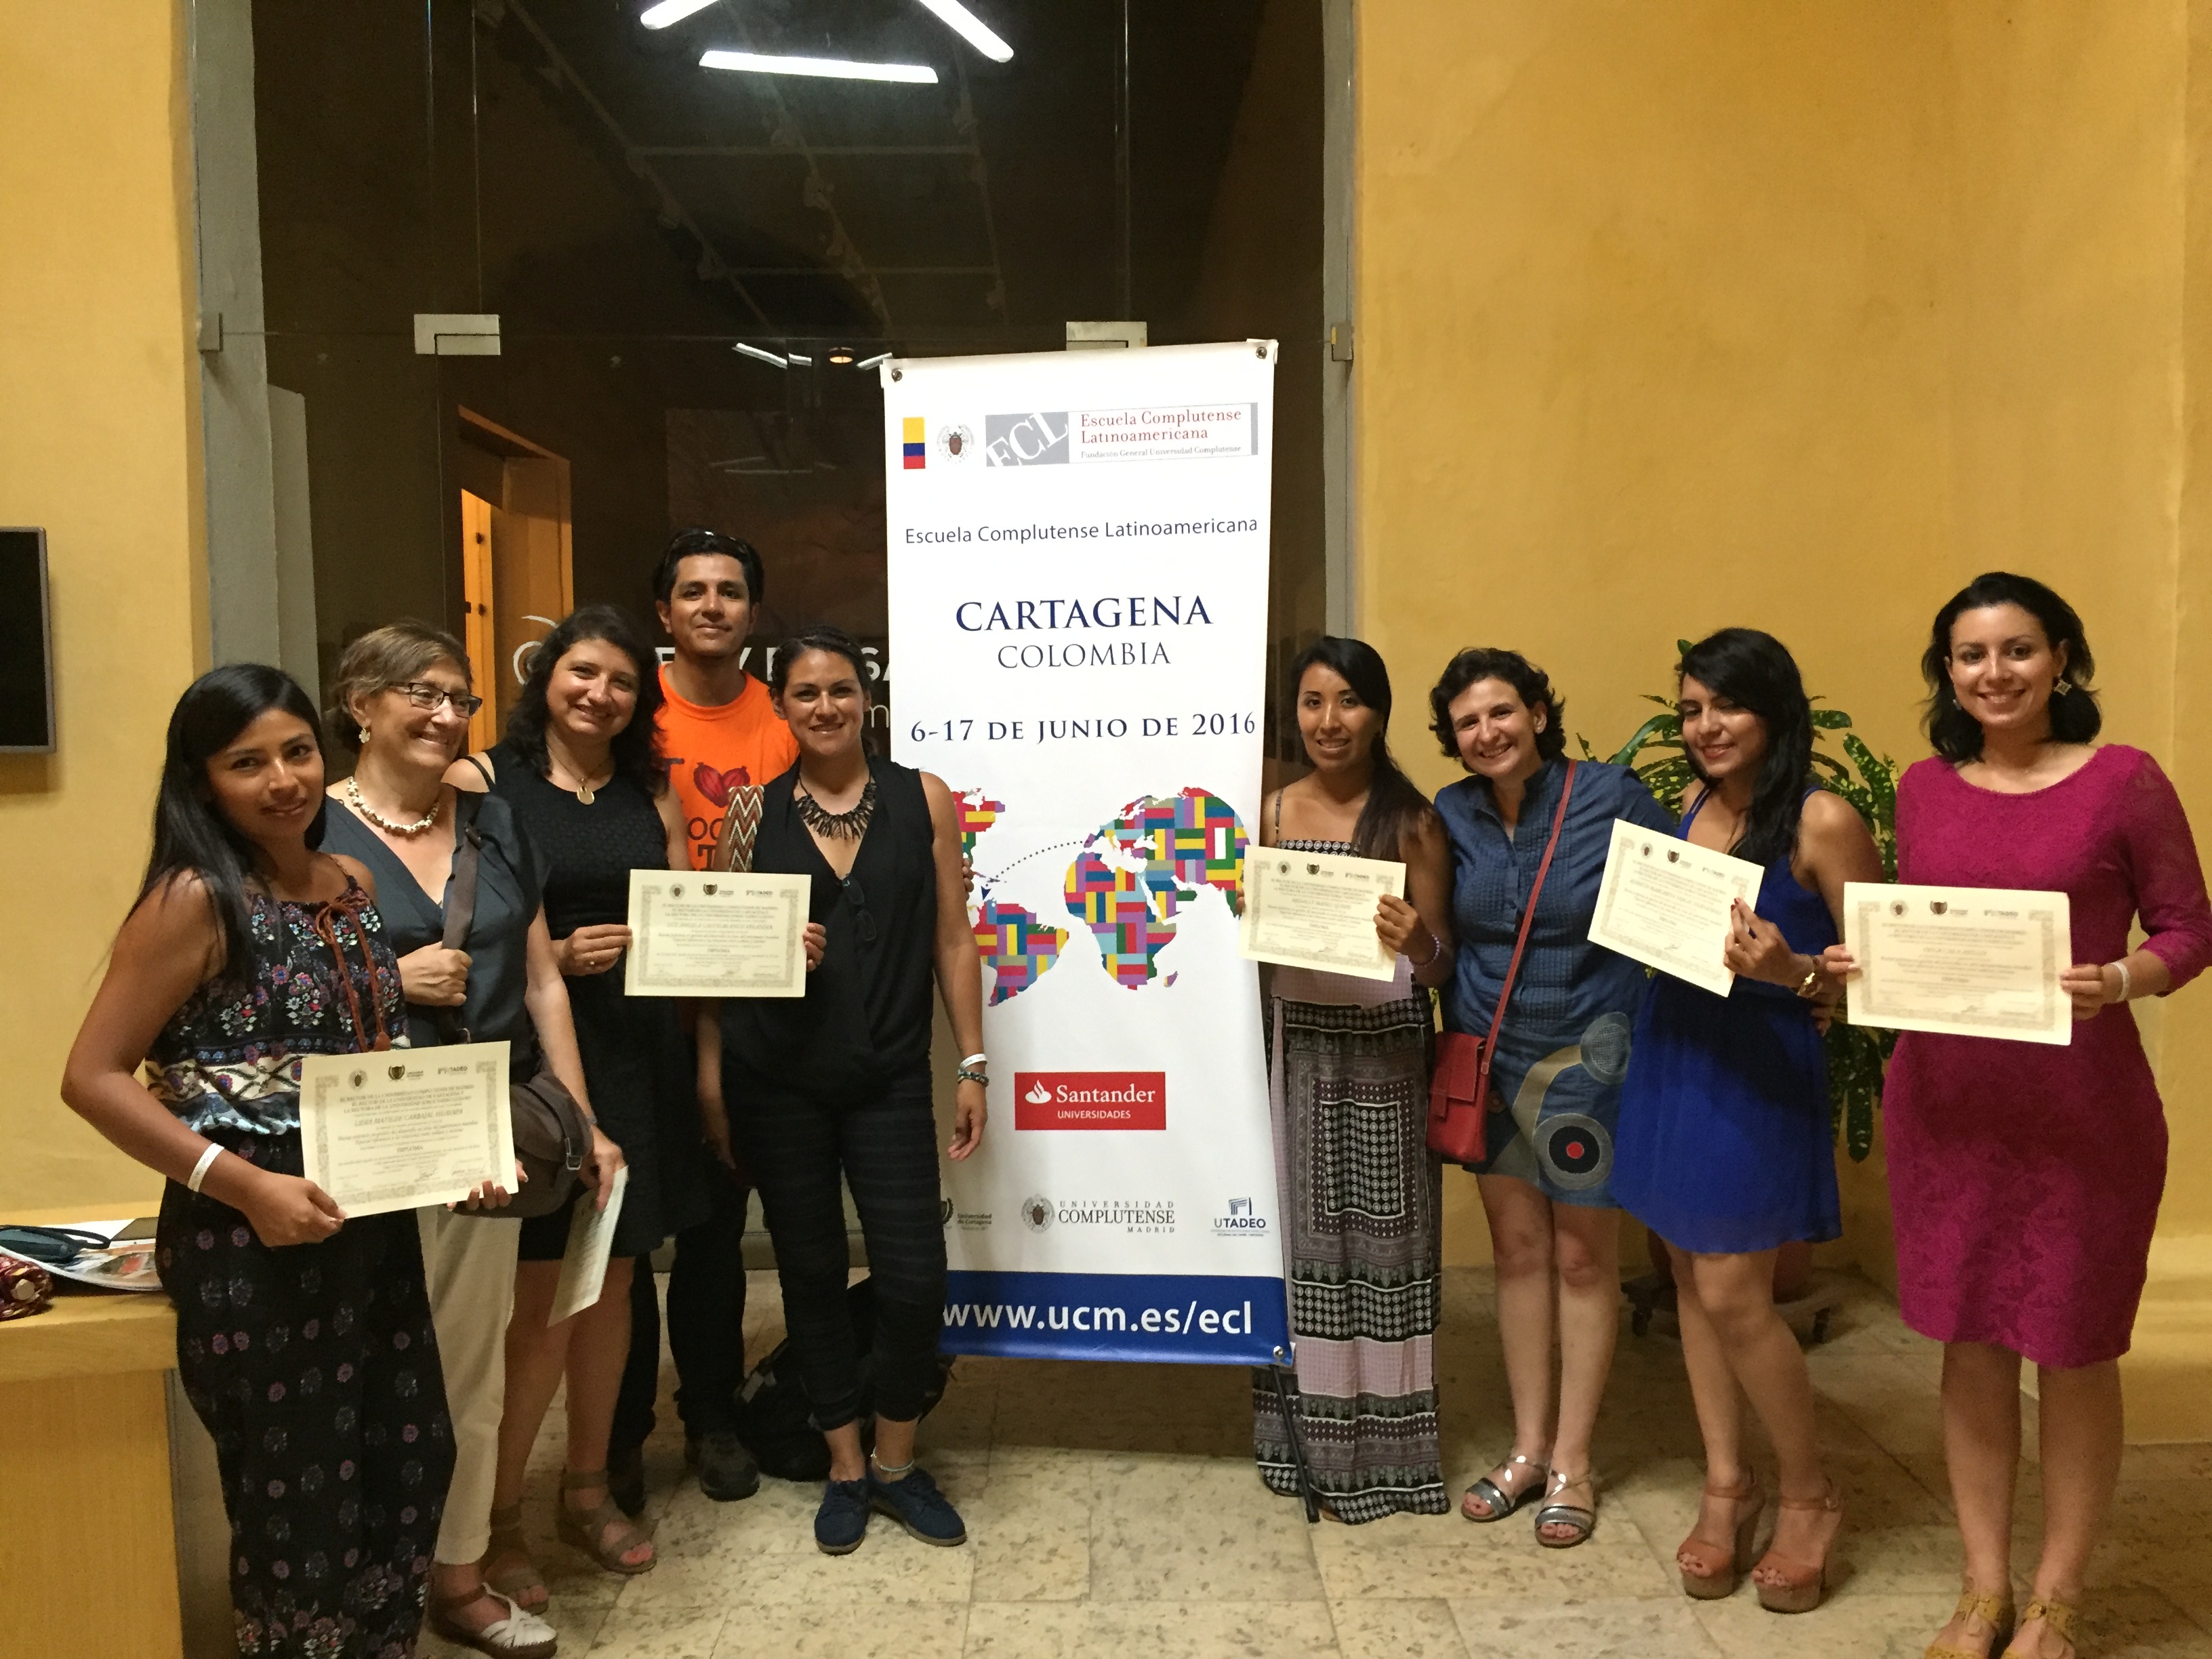 María García con algunos de los alumnos de la Escuela Complutense Latinoamericana de Cartagena de Indias (17 junio 2016)